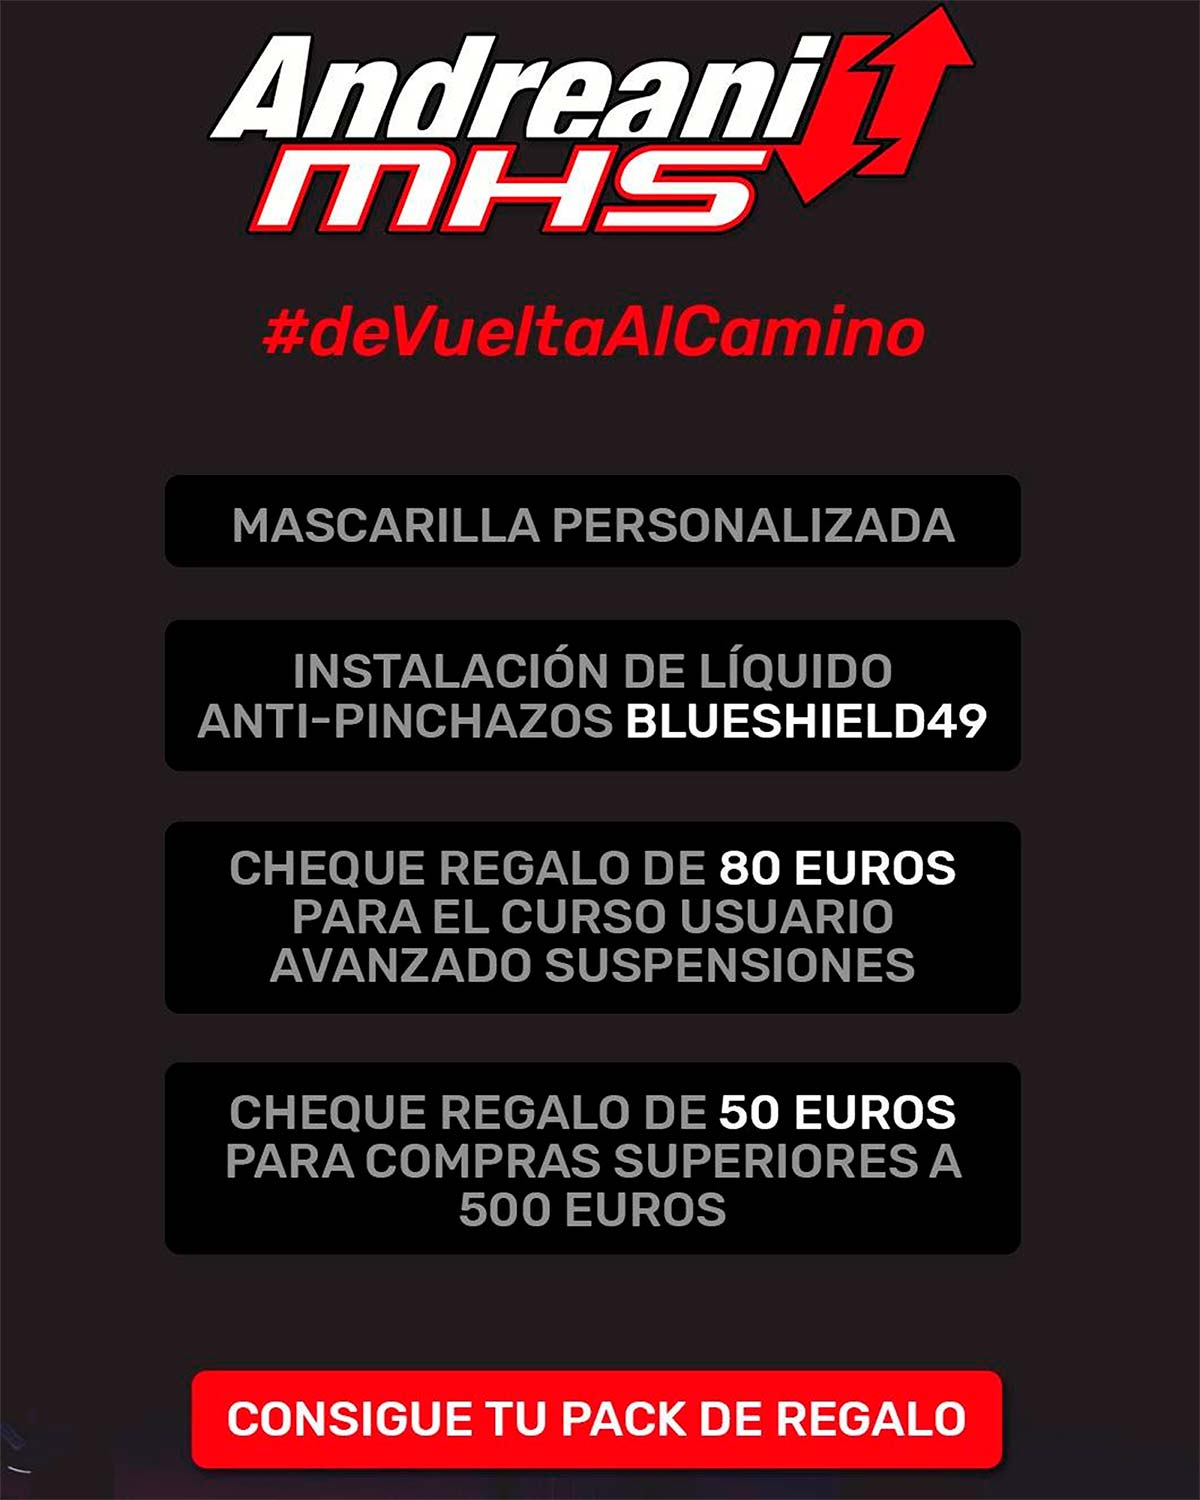 En TodoMountainBike: Andreani MHS pone en marcha la campaña #deVueltaAlCamino con descuentos y regalos para sus clientes